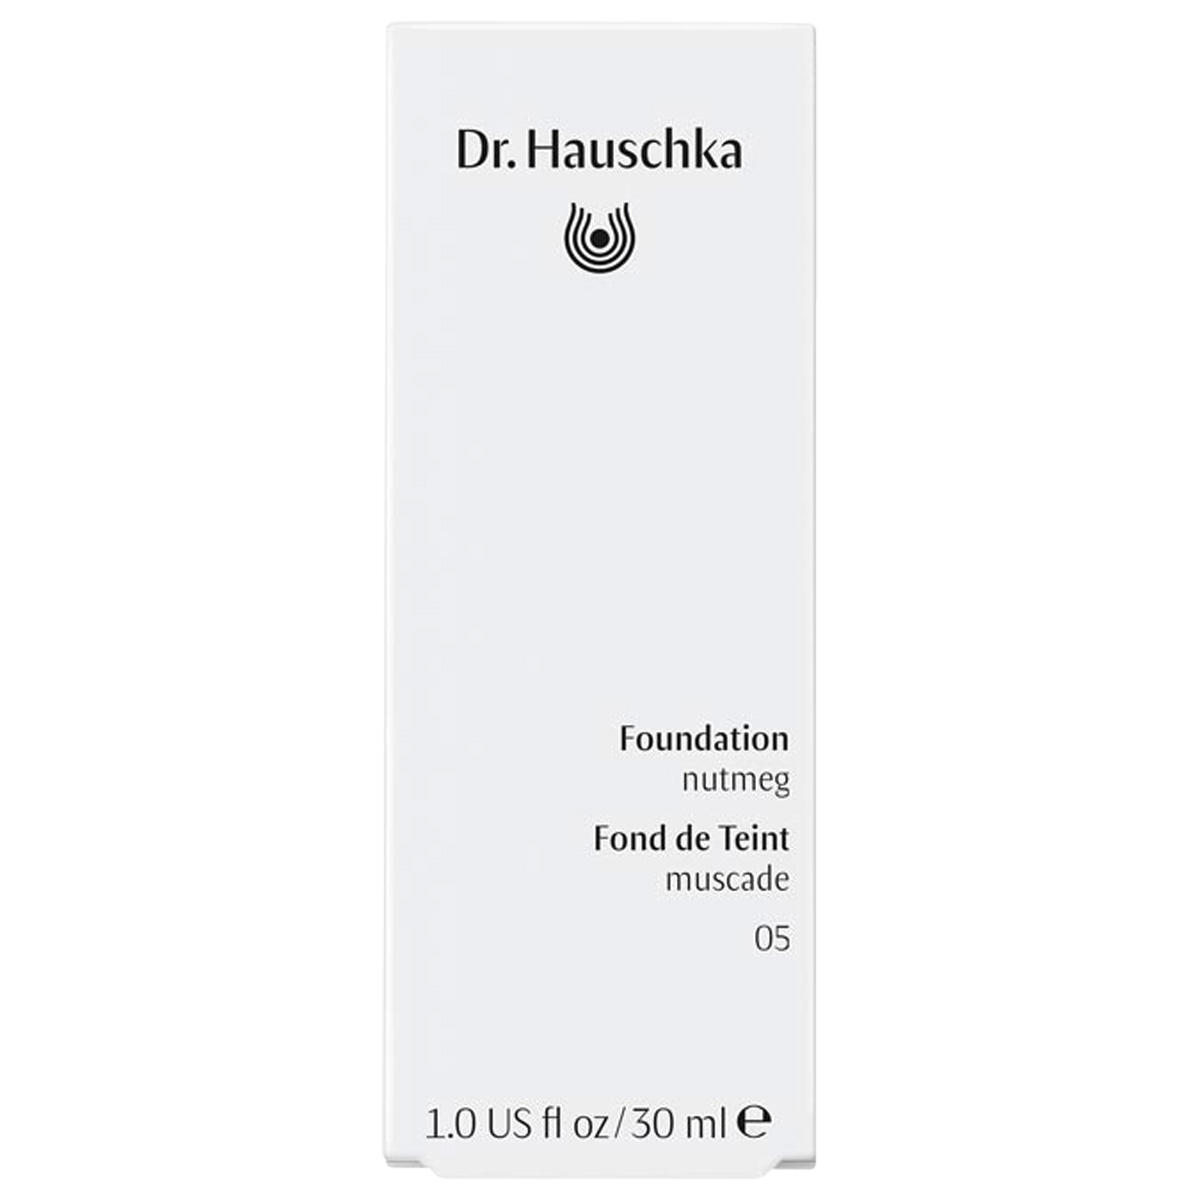 Dr. Hauschka Fondation 05 noix de muscade, contenu 30 ml - 2